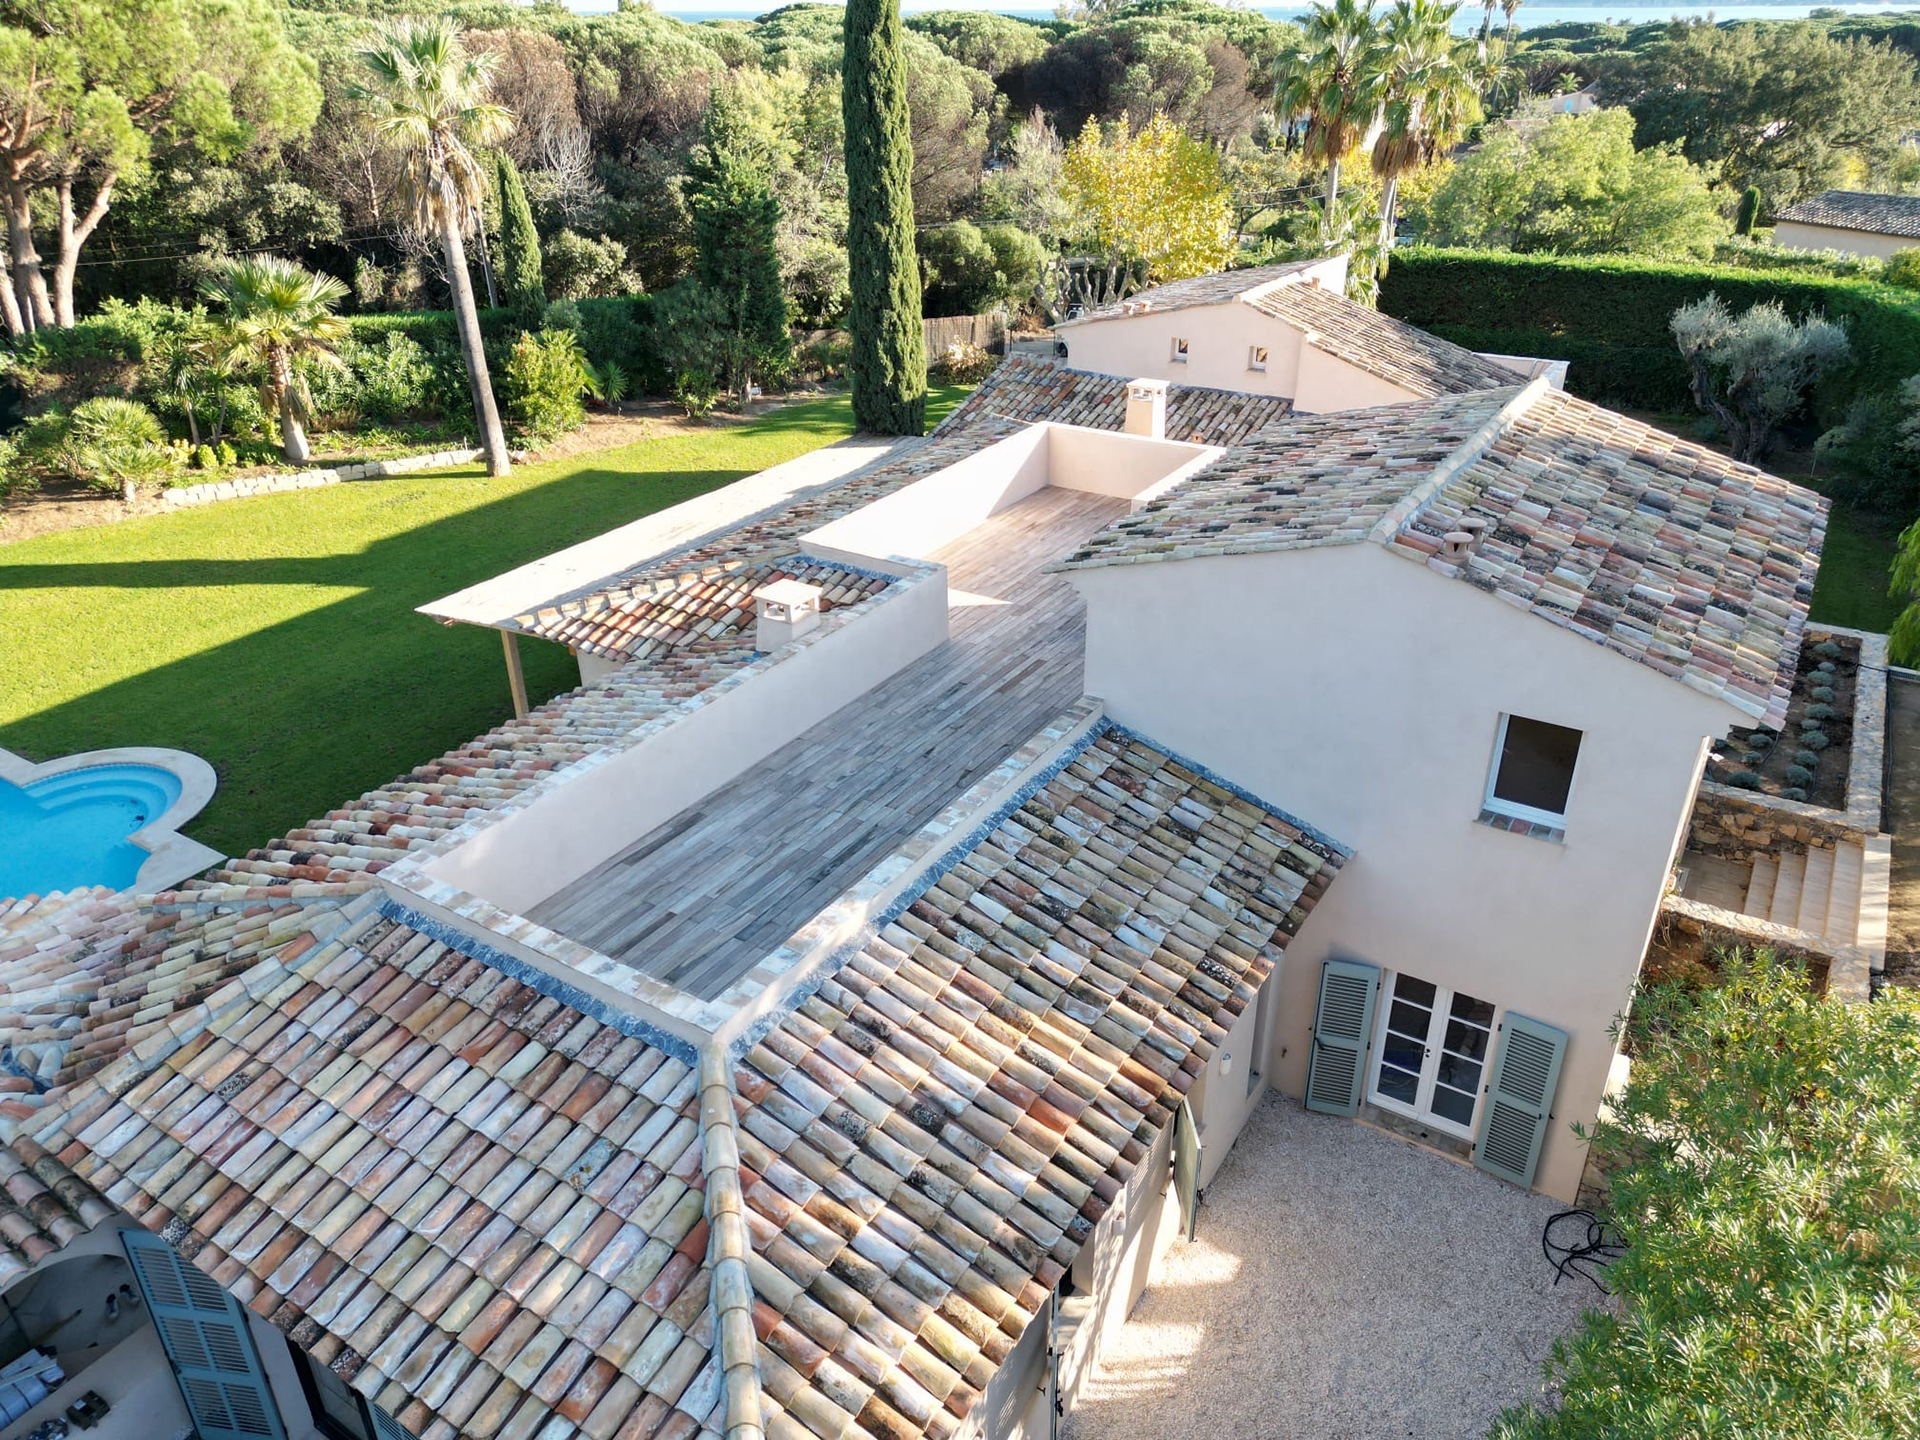 Agence Boris Folli - Architecture et maîtrise d'oeuvre - Saint-Tropez - Conception et réalisation d'une villa